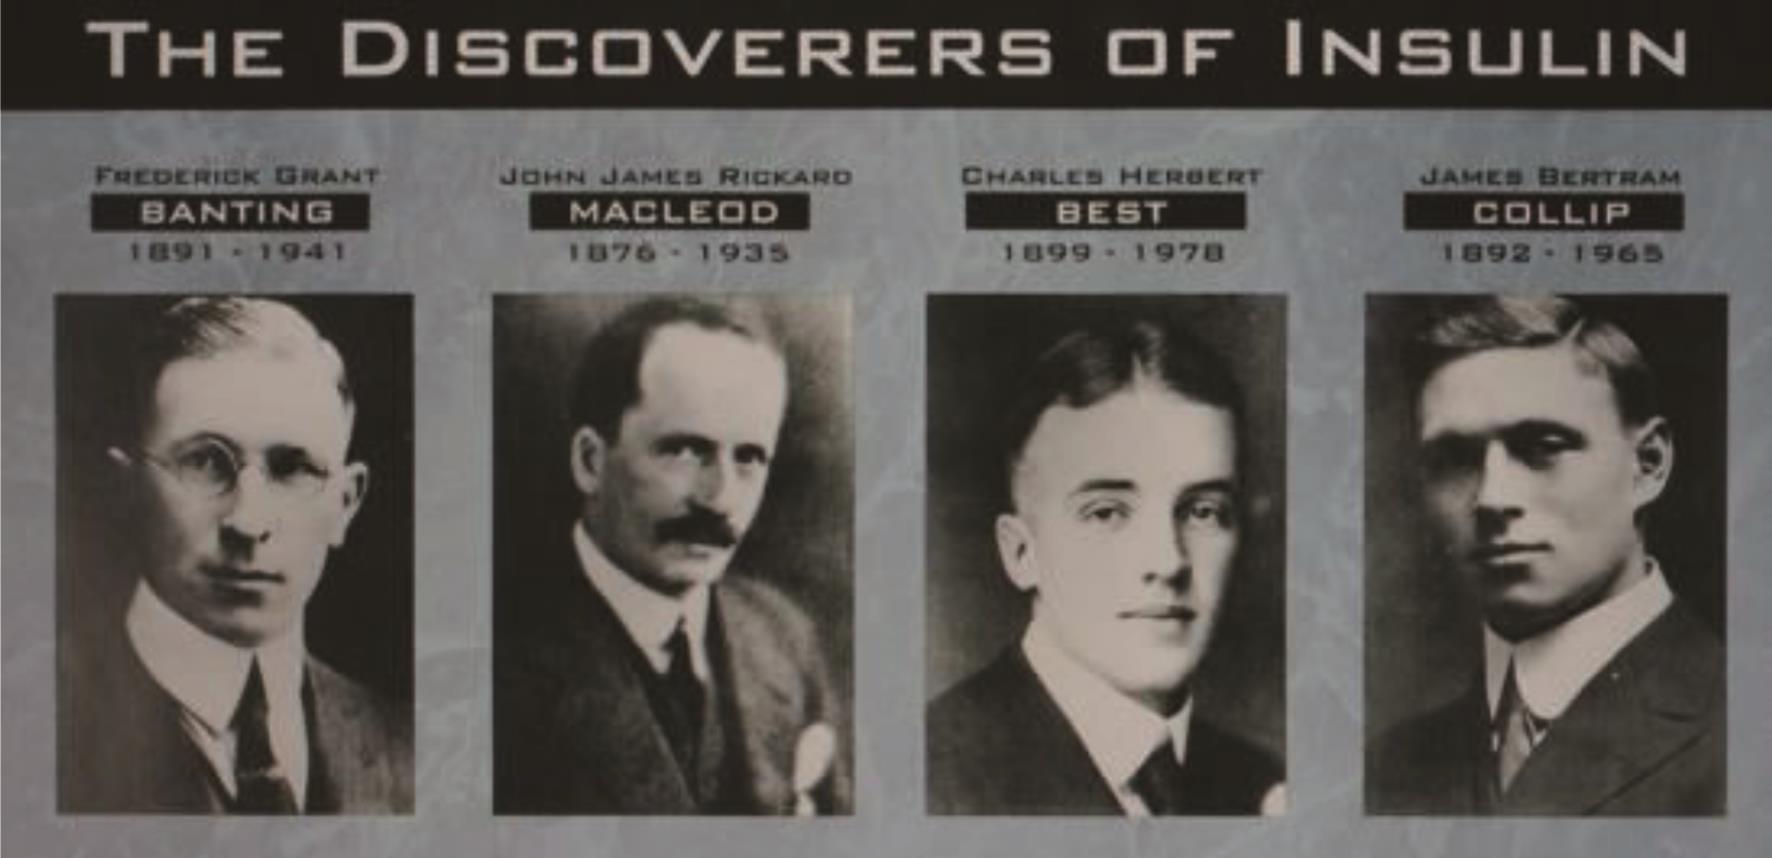  为胰岛素做出重要贡献的四位科学家，从左到右依次是：班廷、麦克劳德、贝斯特、克里普。